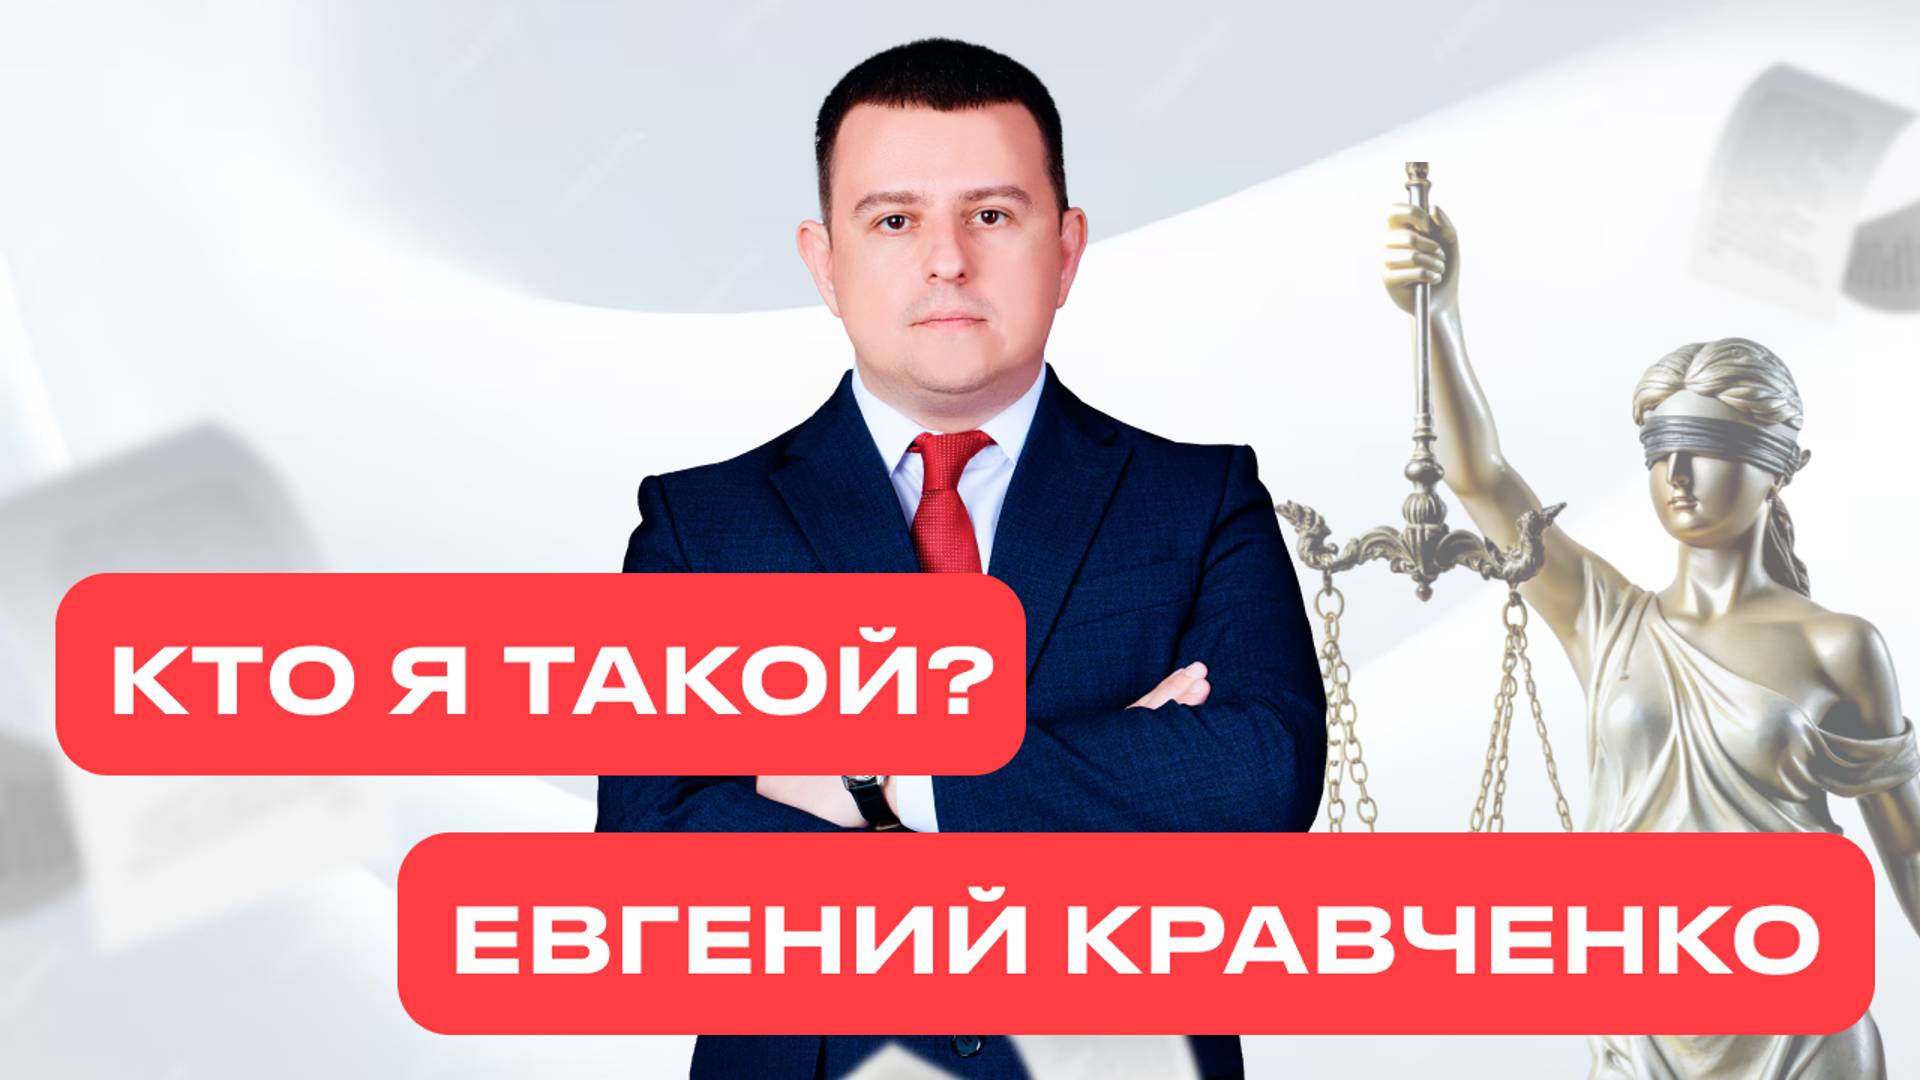 Евгений Кравченко — адвокат, специалист по оспариванию сделок и банкротству